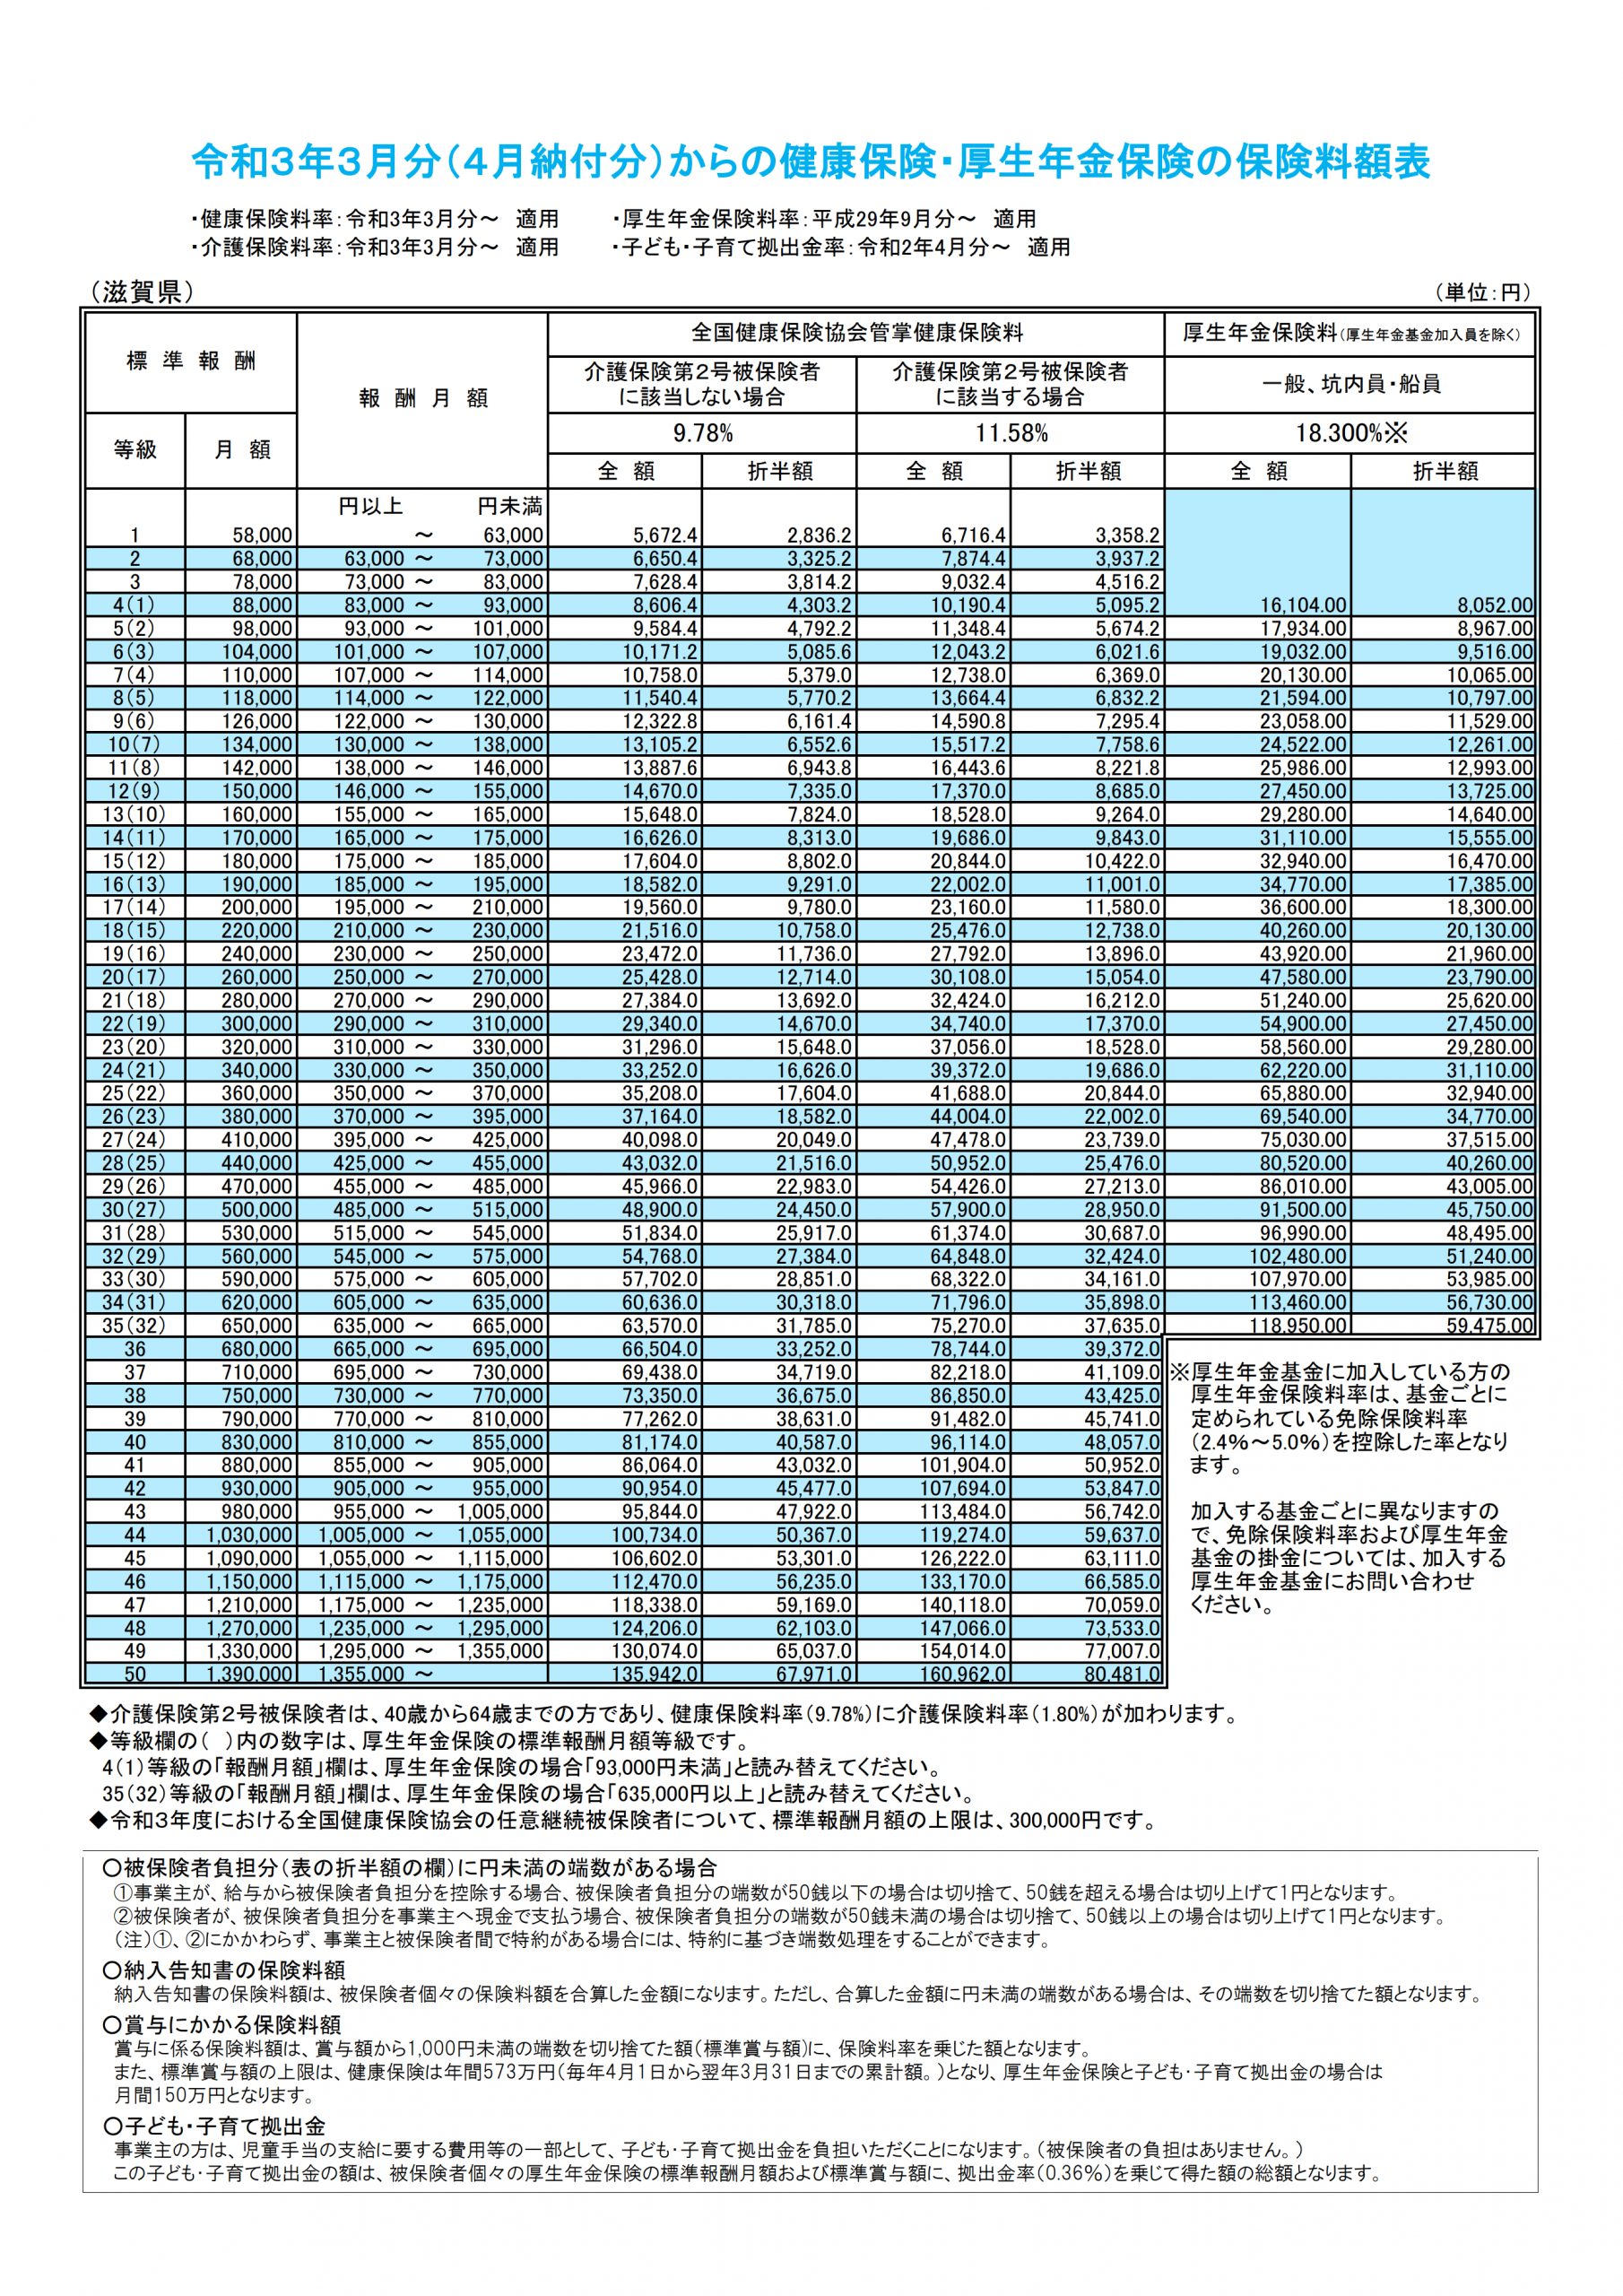 協会けんぽ保険料率改定（2021年3月）